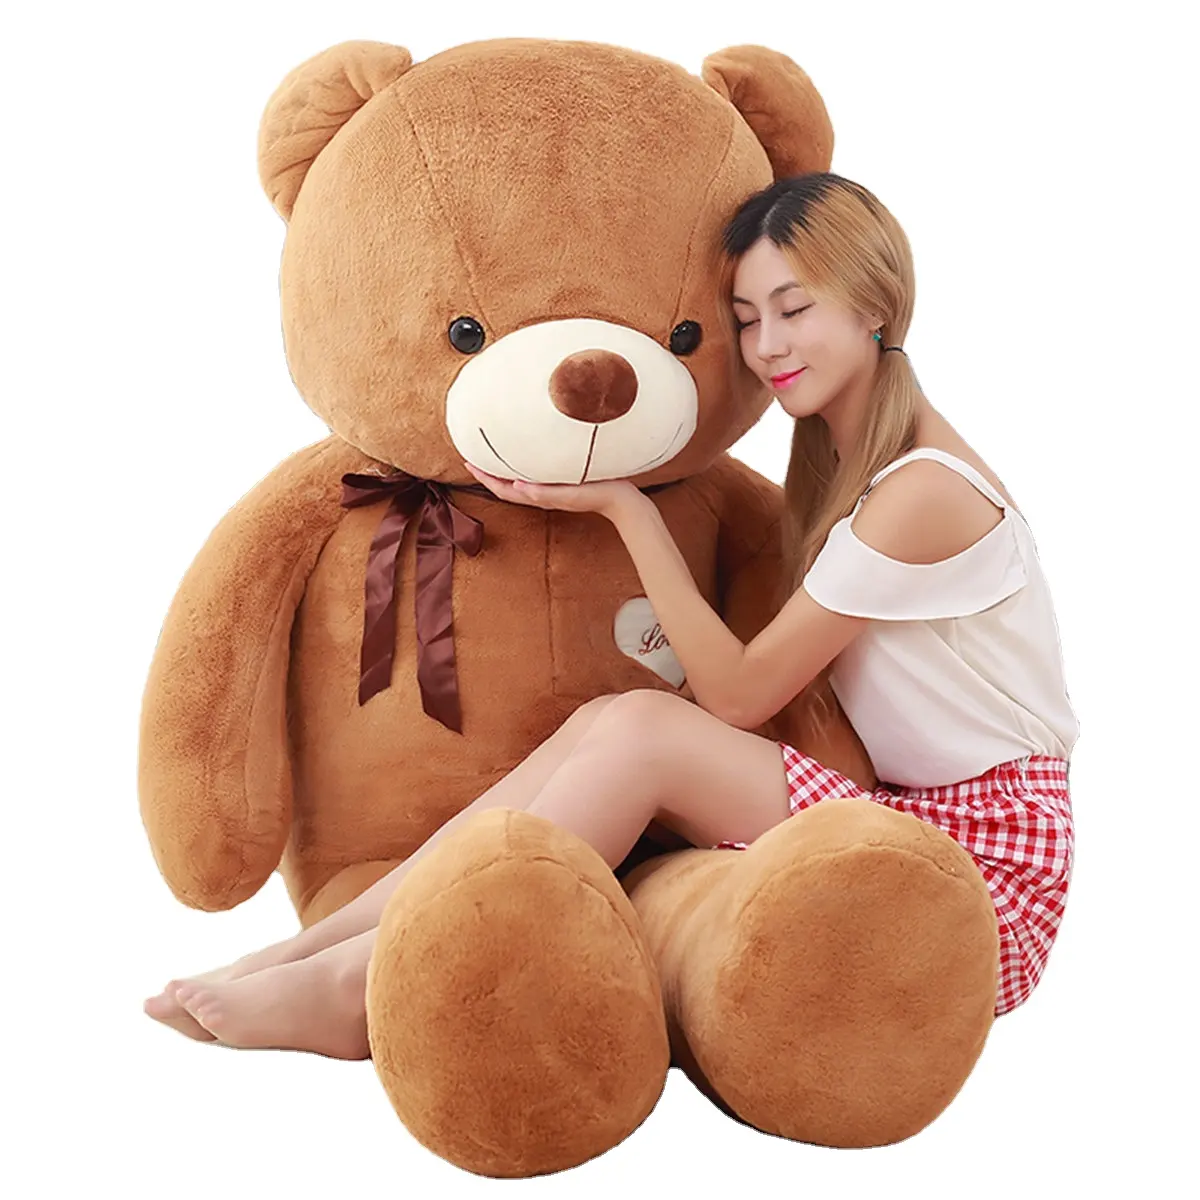 Cuddly 80cm बड़ा टेडी भालू सस्ते टेडी भालू भरवां पशु उम्दा खिलौने विशाल टेडी भालू